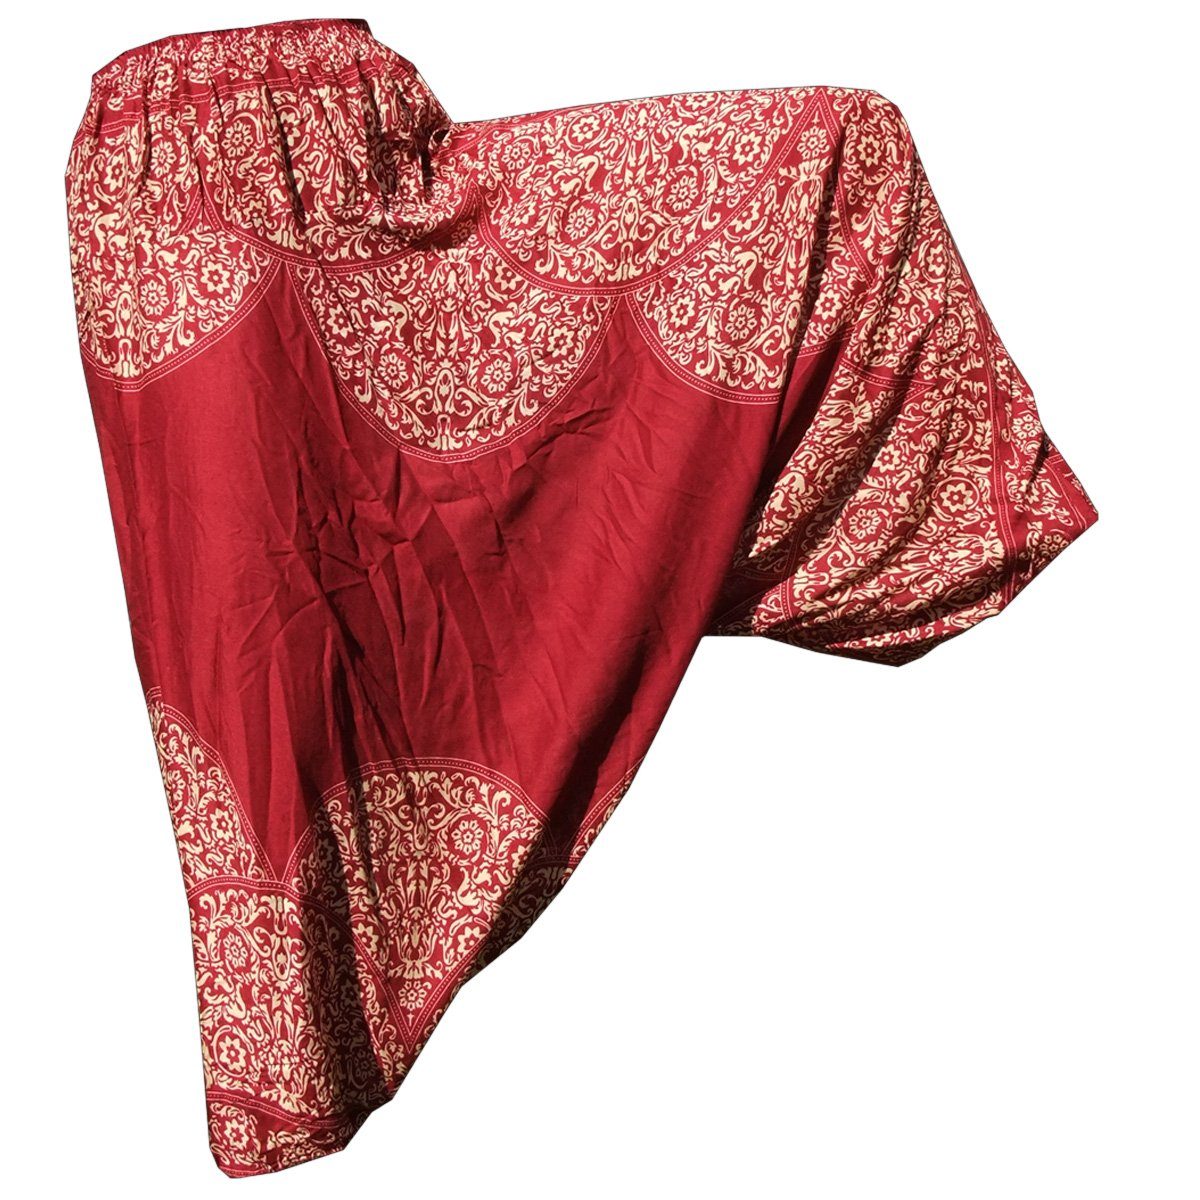 PANASIAM Relaxhose Aladinhose Ornament Haremshose aus 100% natürlicher Viskose Pumphose für Damen bequeme Freizeithose Pluderhose Rot